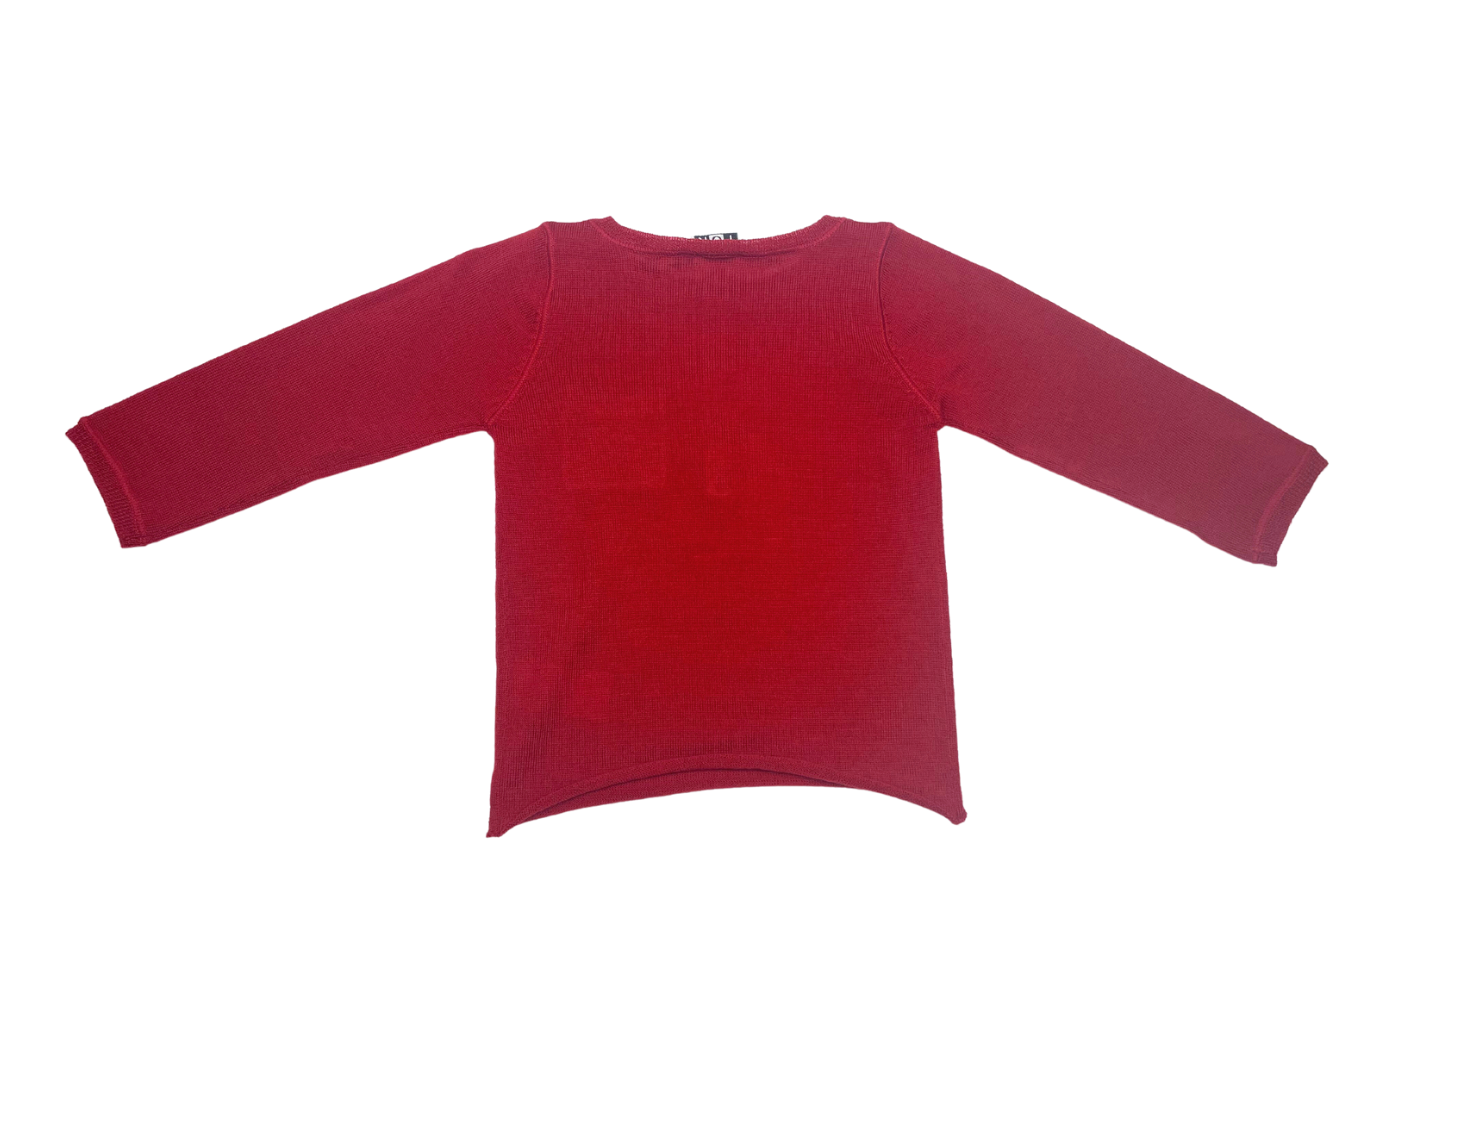 BONTON - Pull rouge en laine - 18 mois